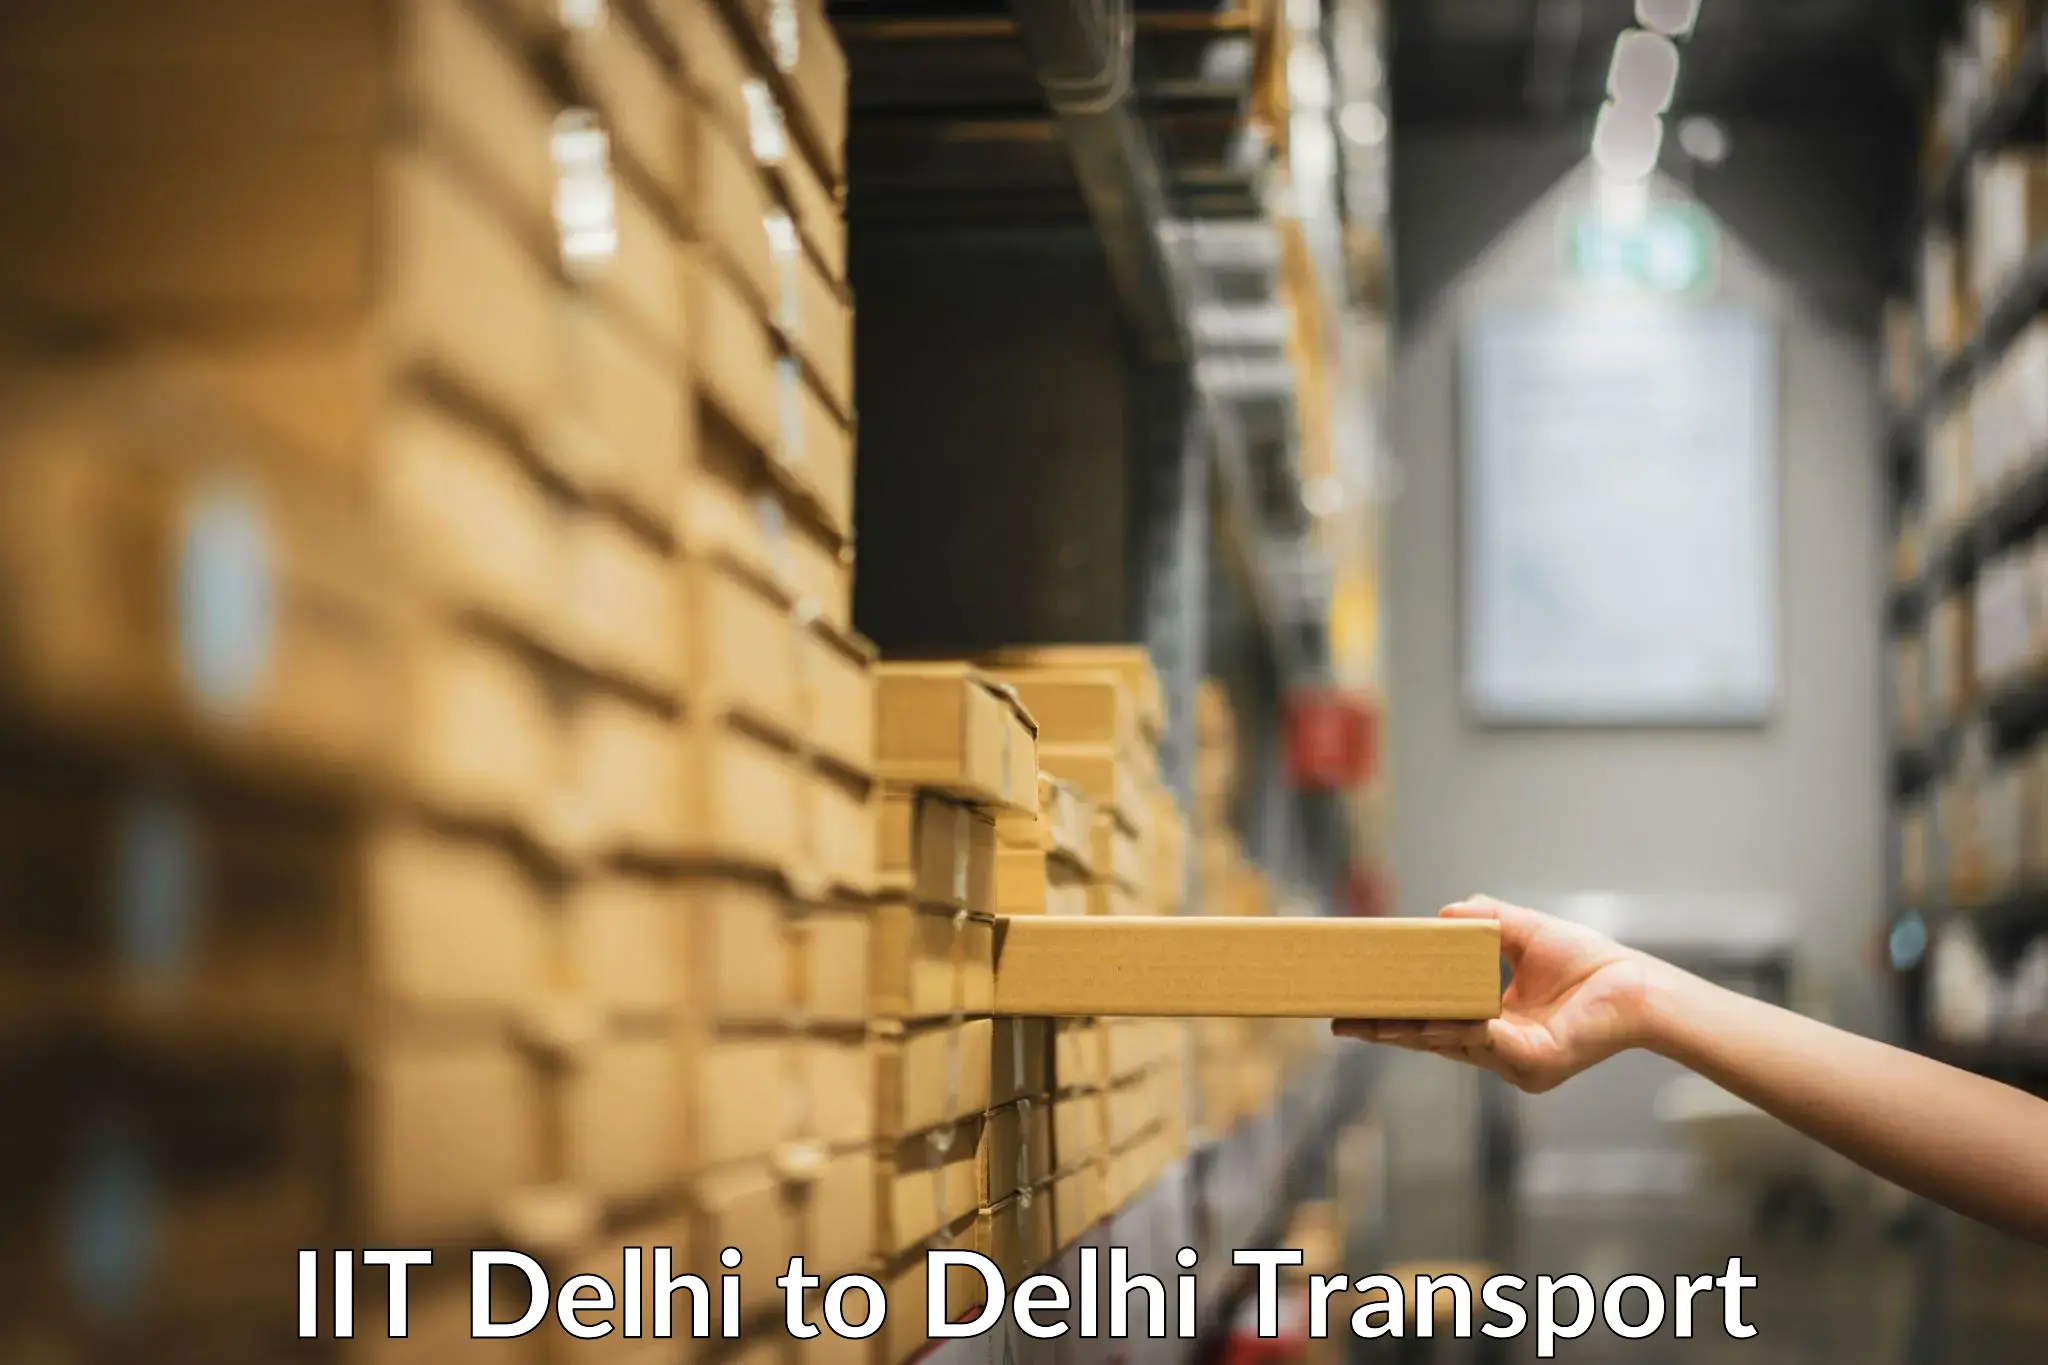 Domestic goods transportation services IIT Delhi to Delhi